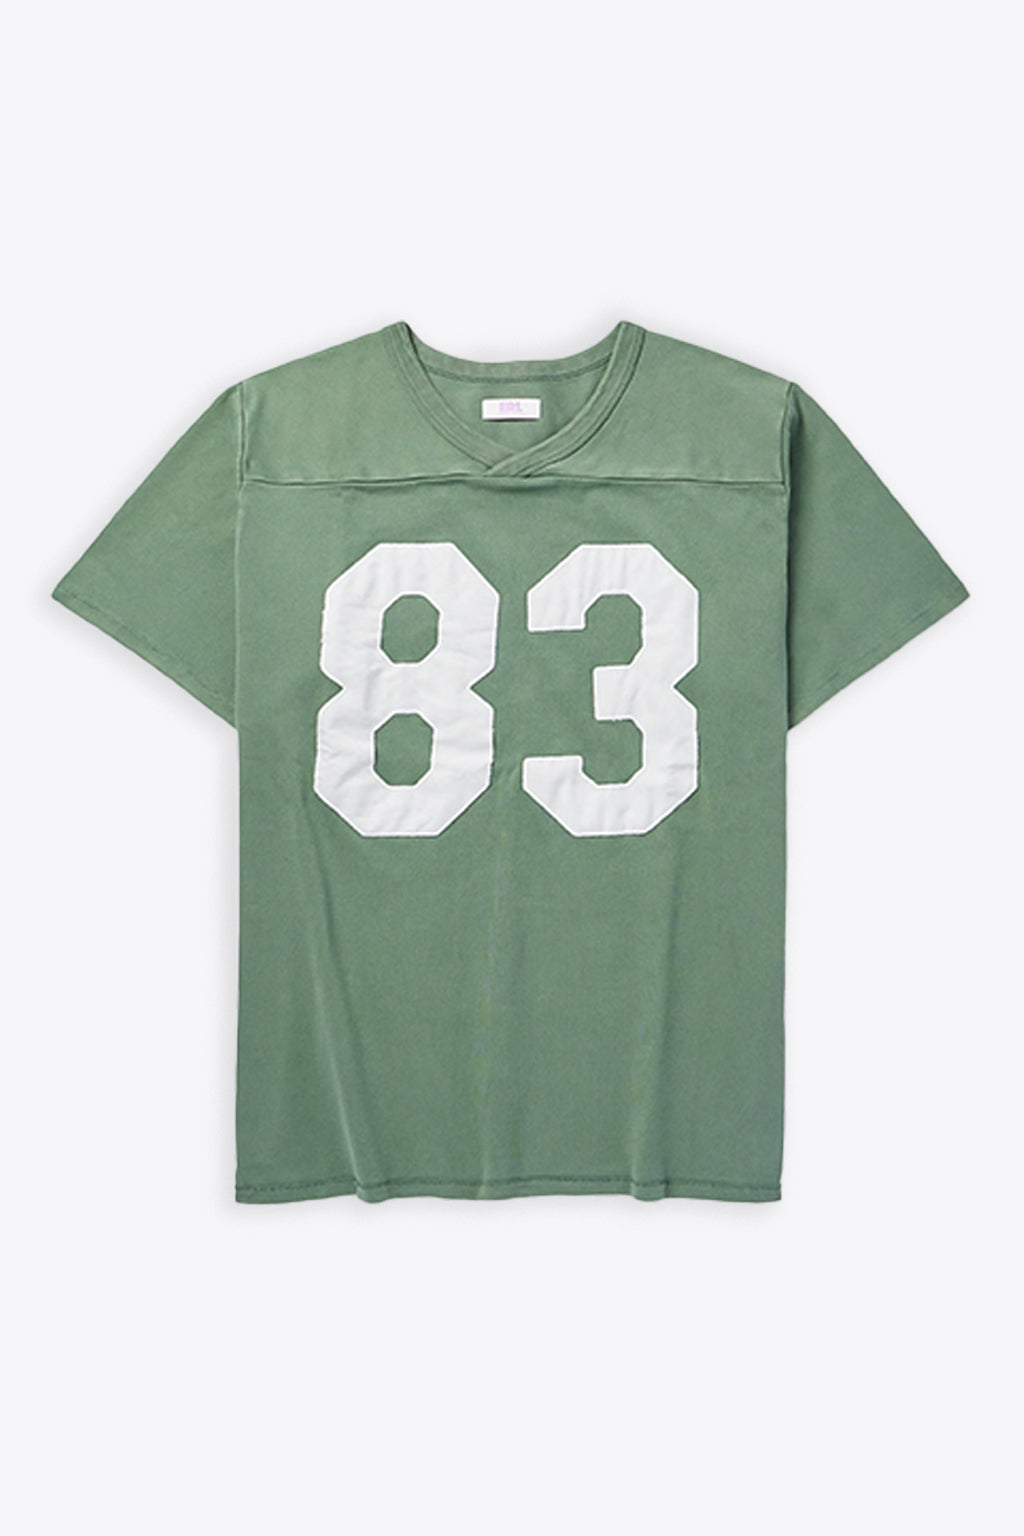 alt-image__Green-cotton-football-t-shirt---Unisex-football-shirt-knit-